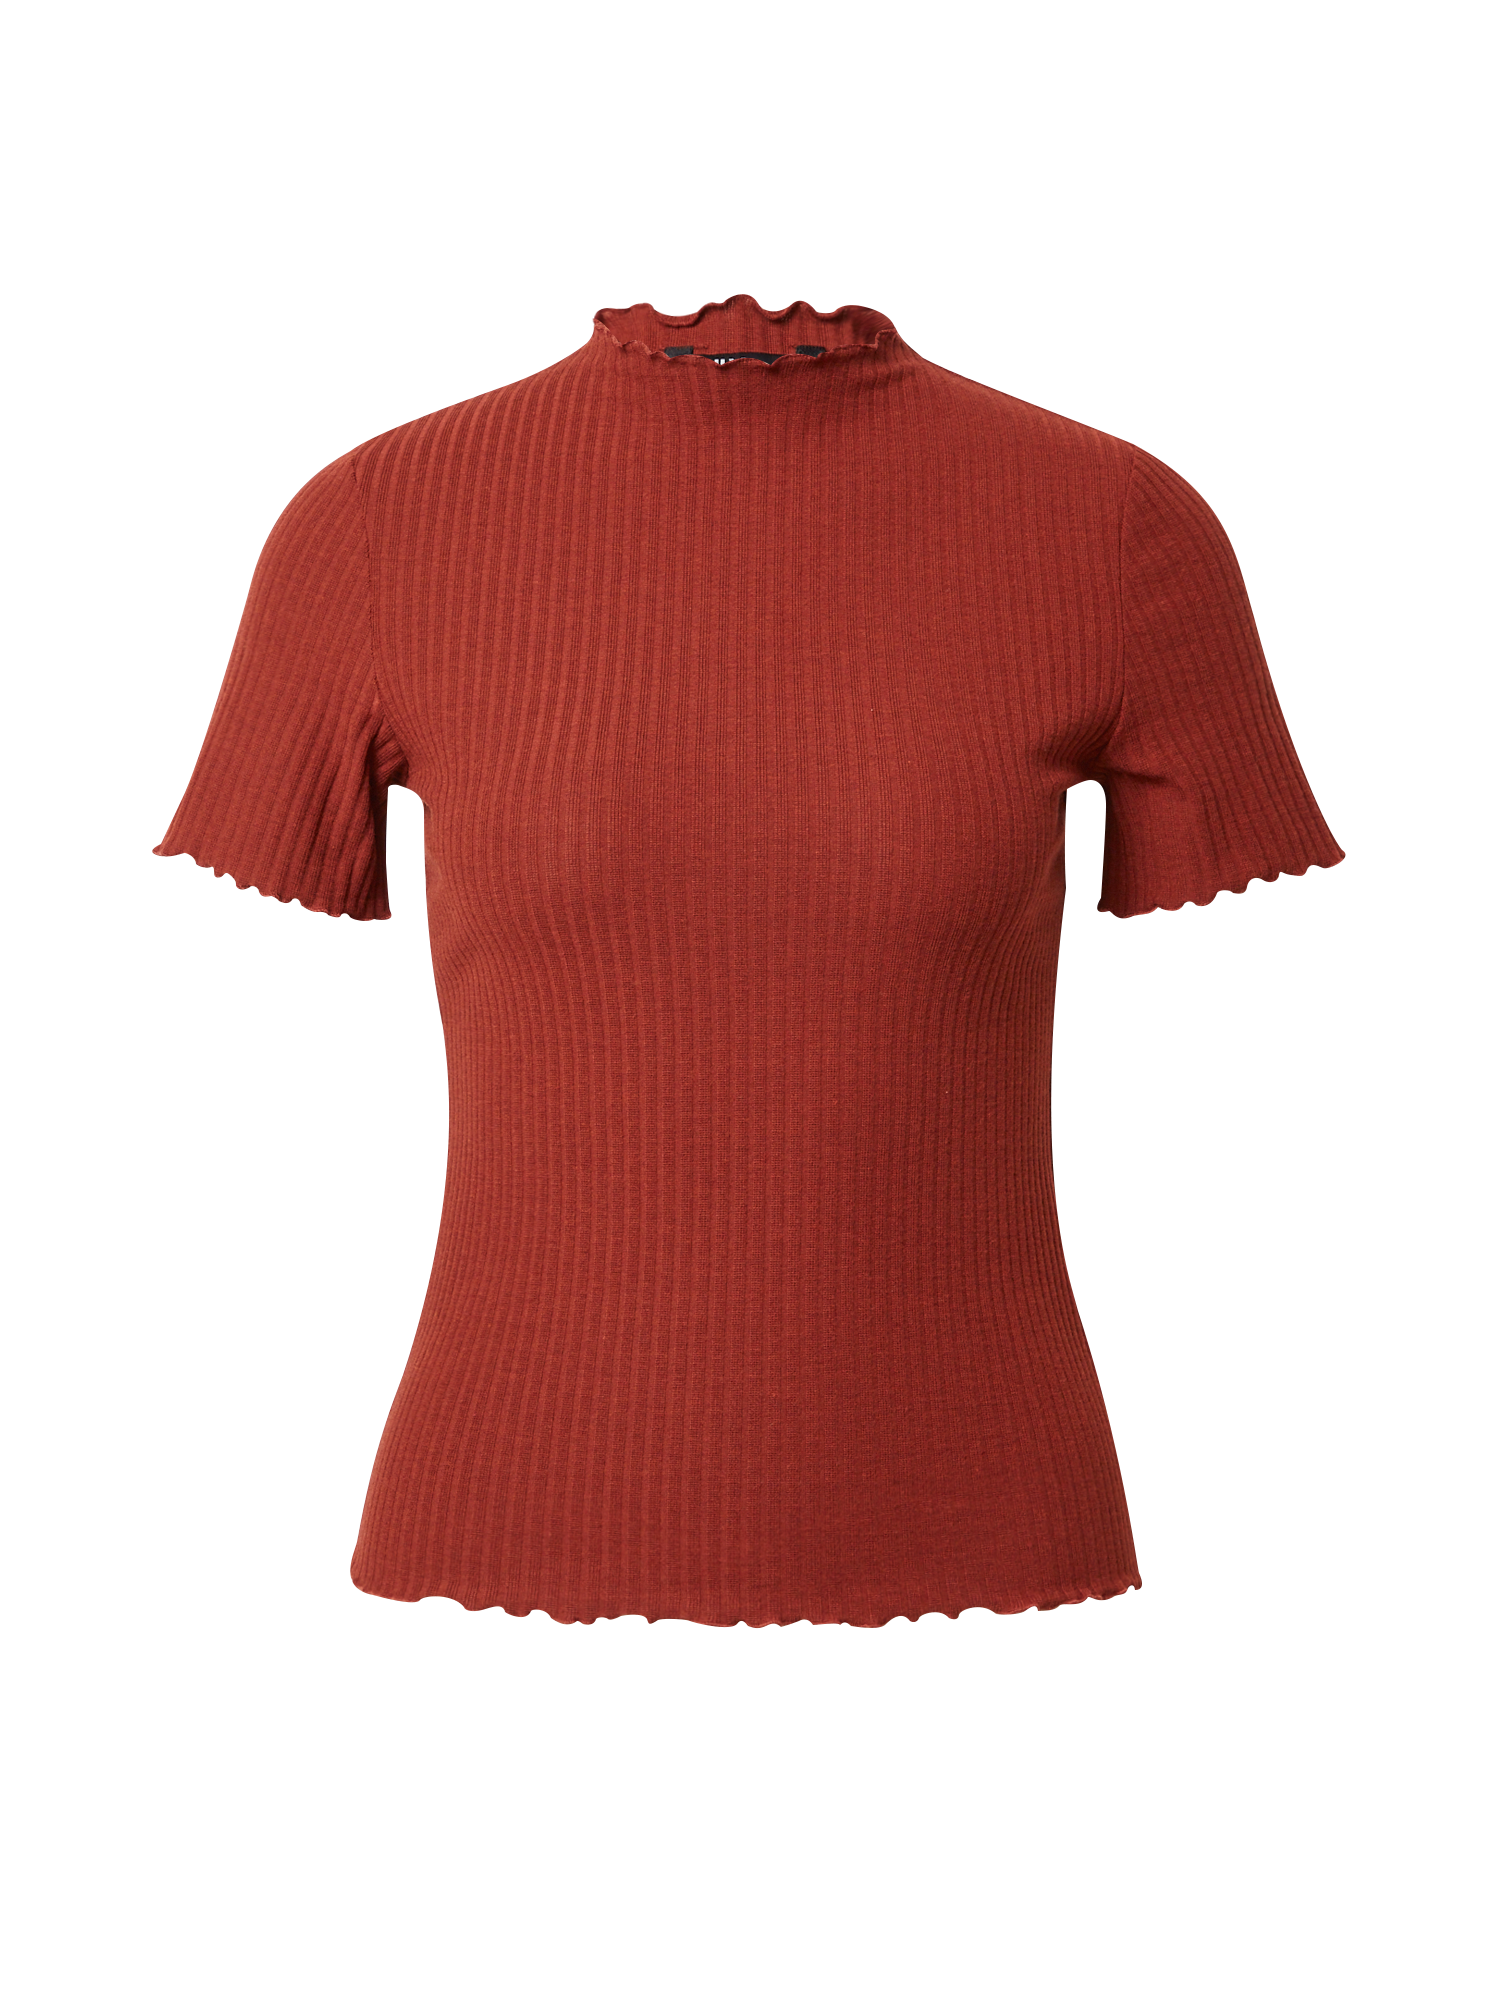 crN3H Plus size ONLY Koszulka Emma w kolorze Rdzawobrązowym 